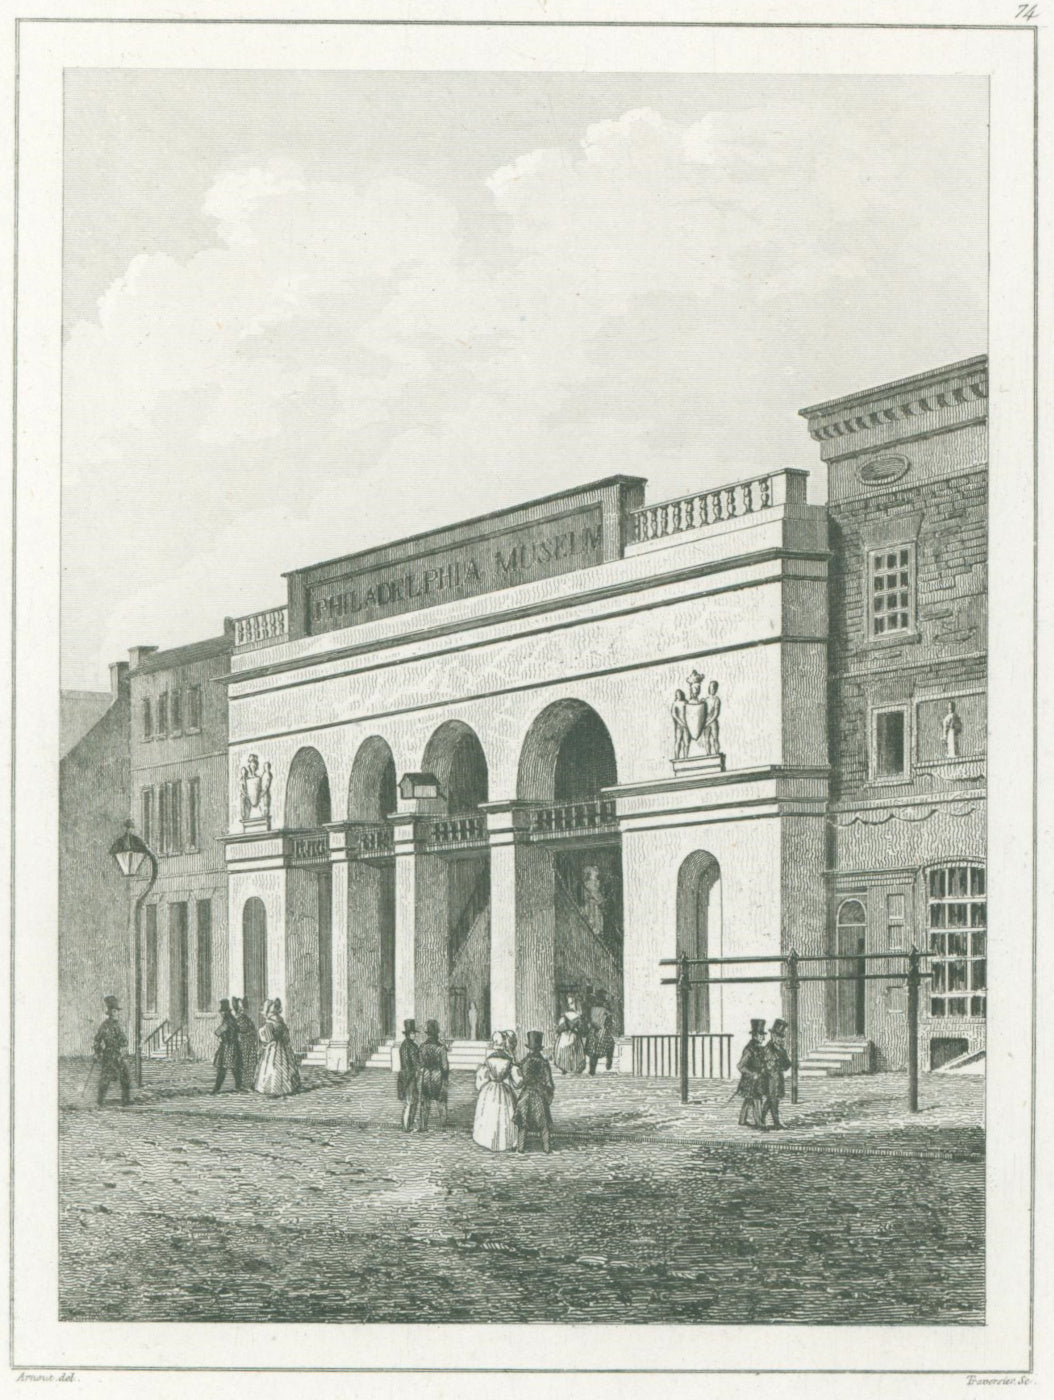 Arnout  “Museum de Philadelphie”  From Jean B.G. Roux de Rochelle’s 